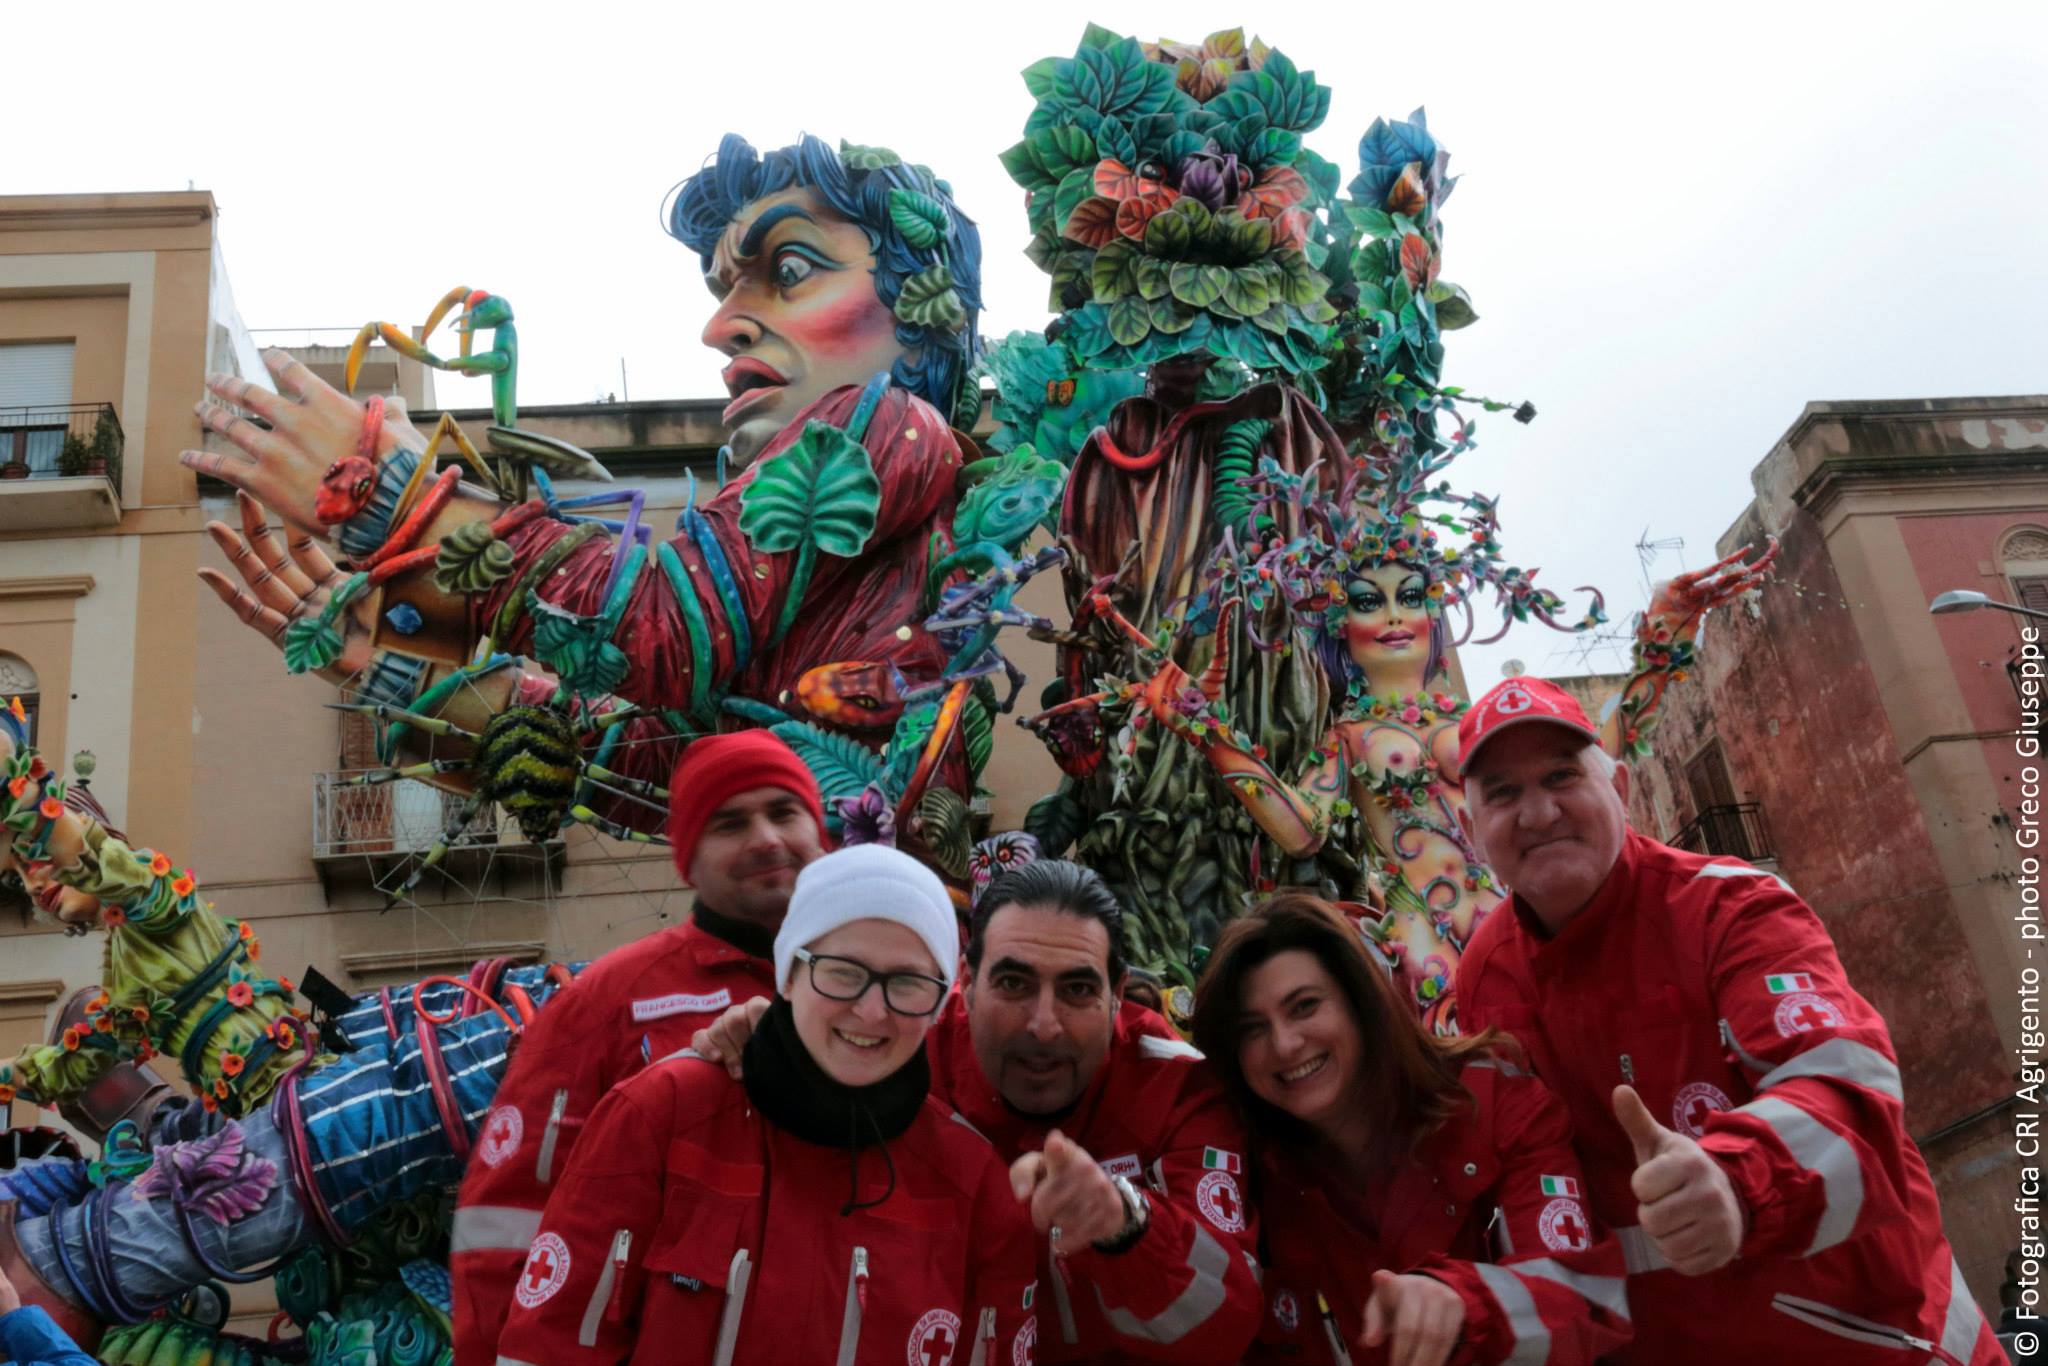 La C.R.I. al Carnevale di Sciacca, oltre 100 Volontari per l'evento